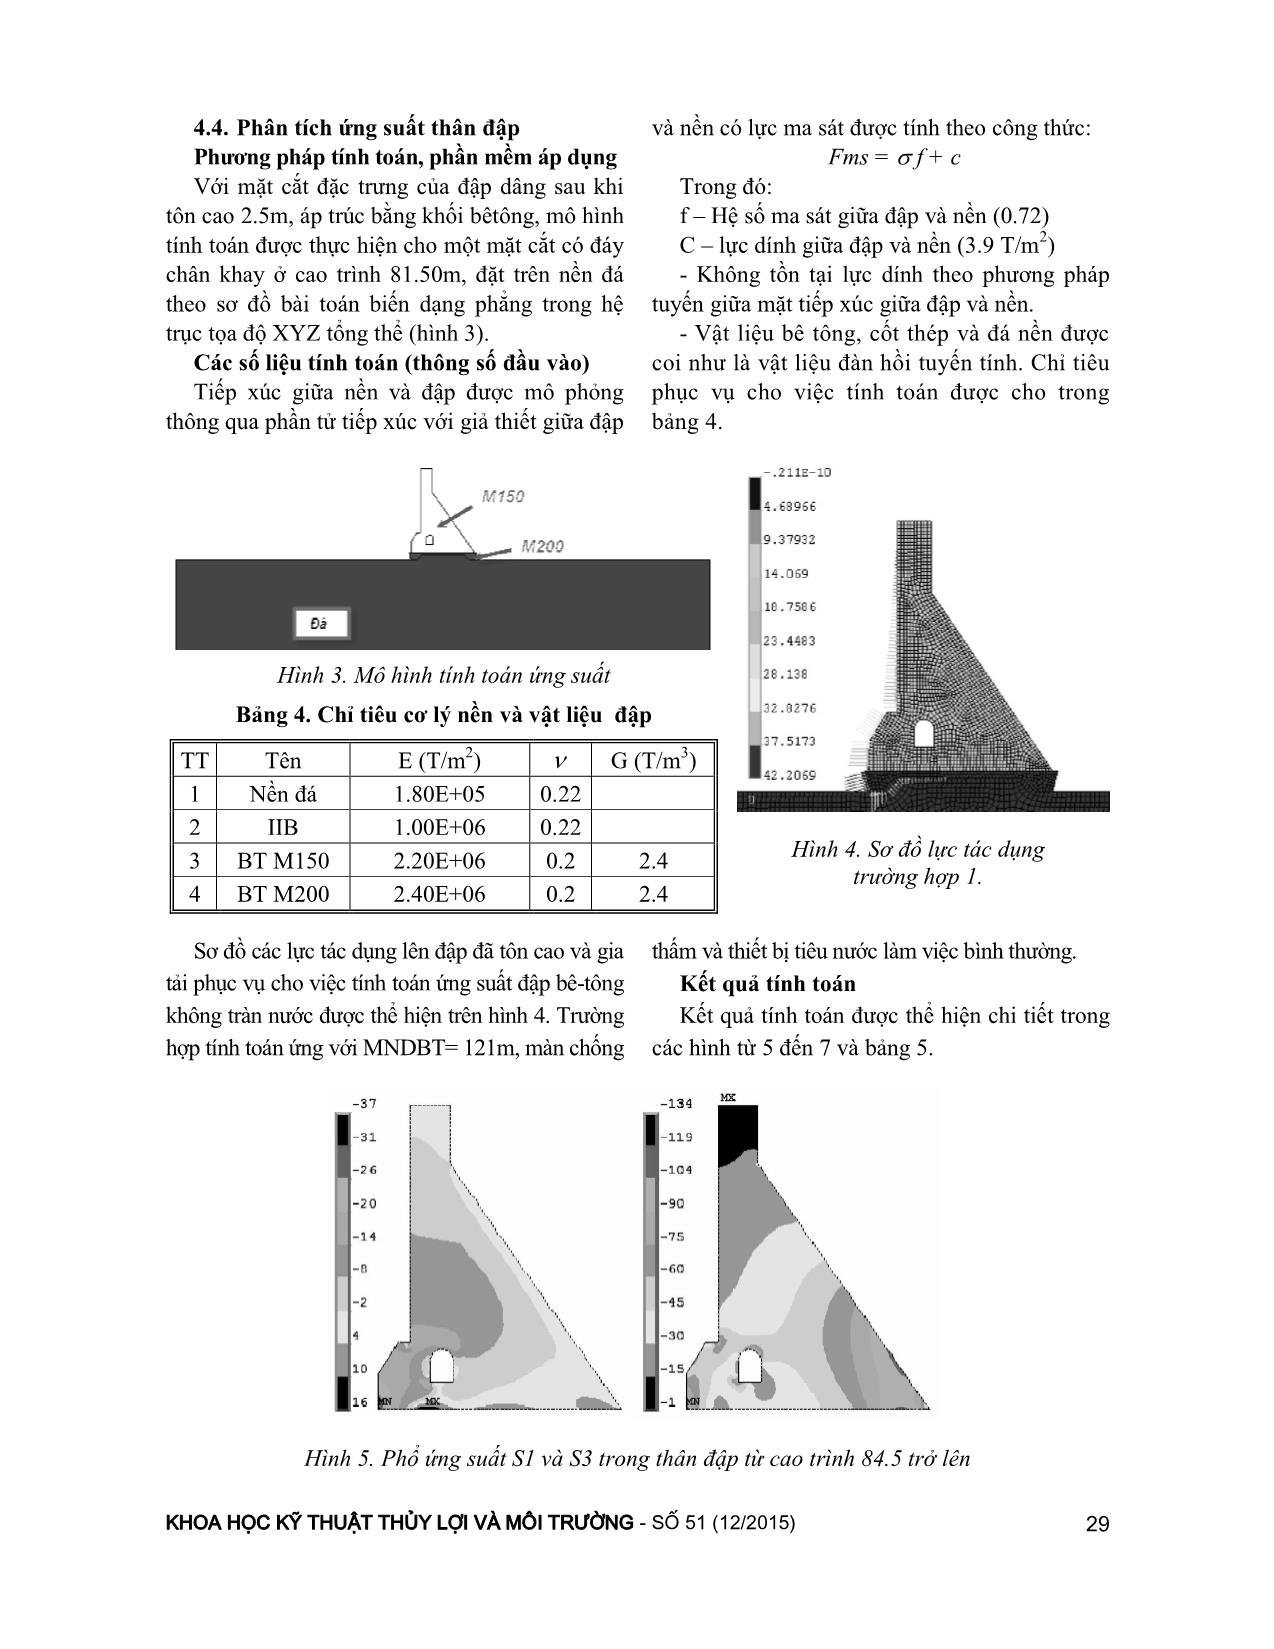 Một số vấn đề kỹ thuật khi xử lý tôn cao đập bê-tông trọng lực, áp dụng cho đập Tân Giang – Ninh Thuận trang 5